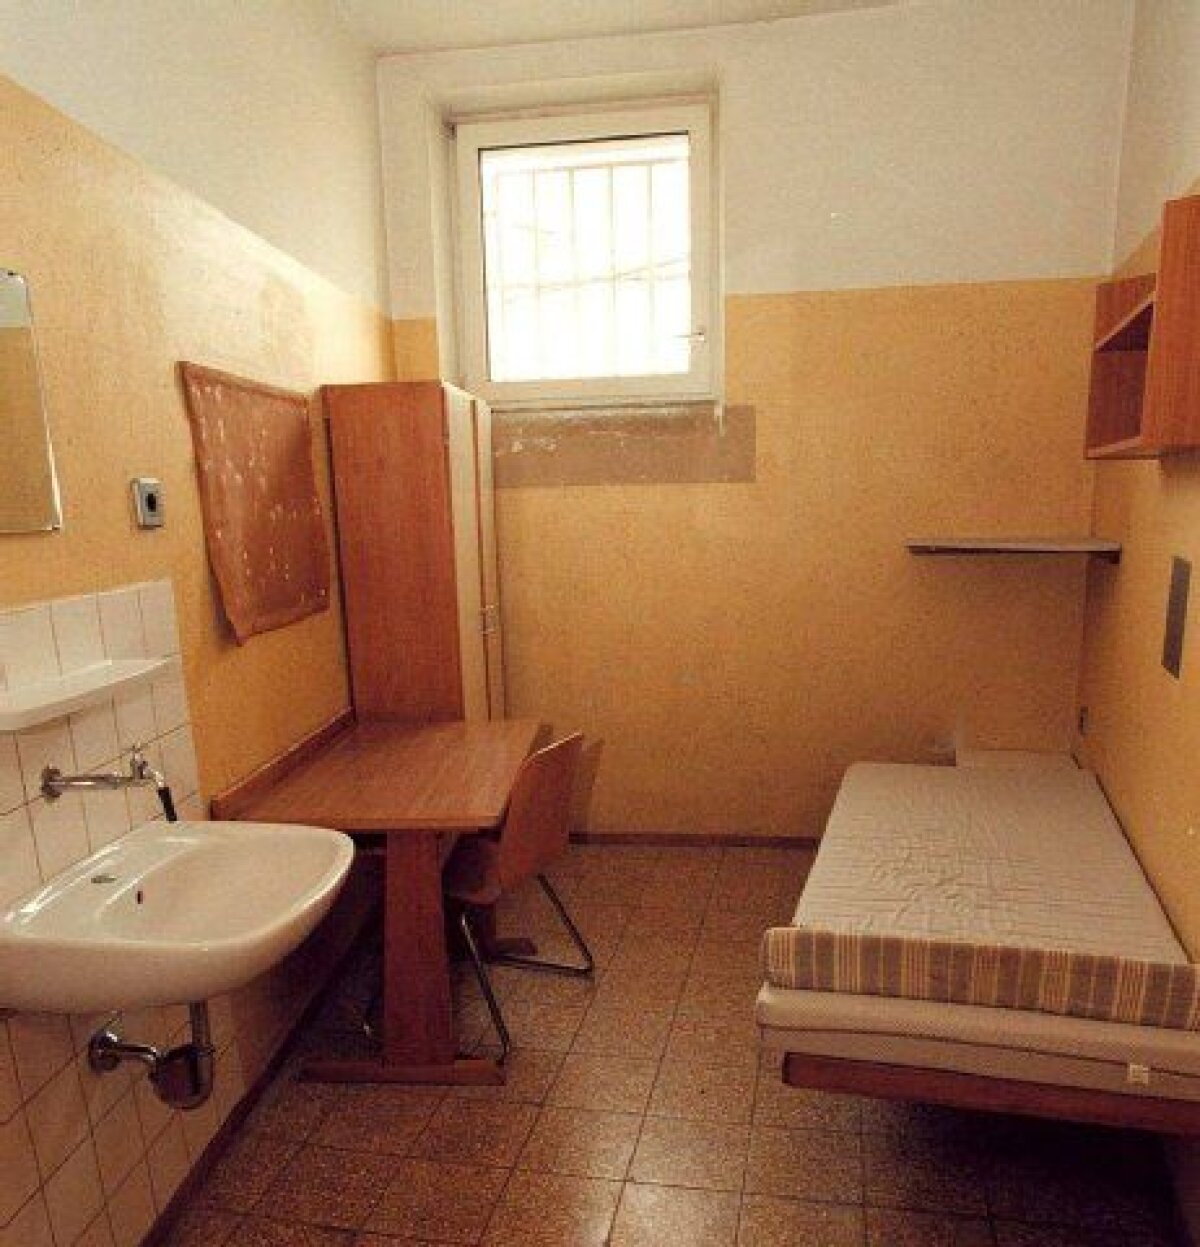 Închis la puşcăria lui Adolf Hitler! » Uli Hoeness va executa pedeapsa acolo unde dictatorul nazist a stat 264 de zile